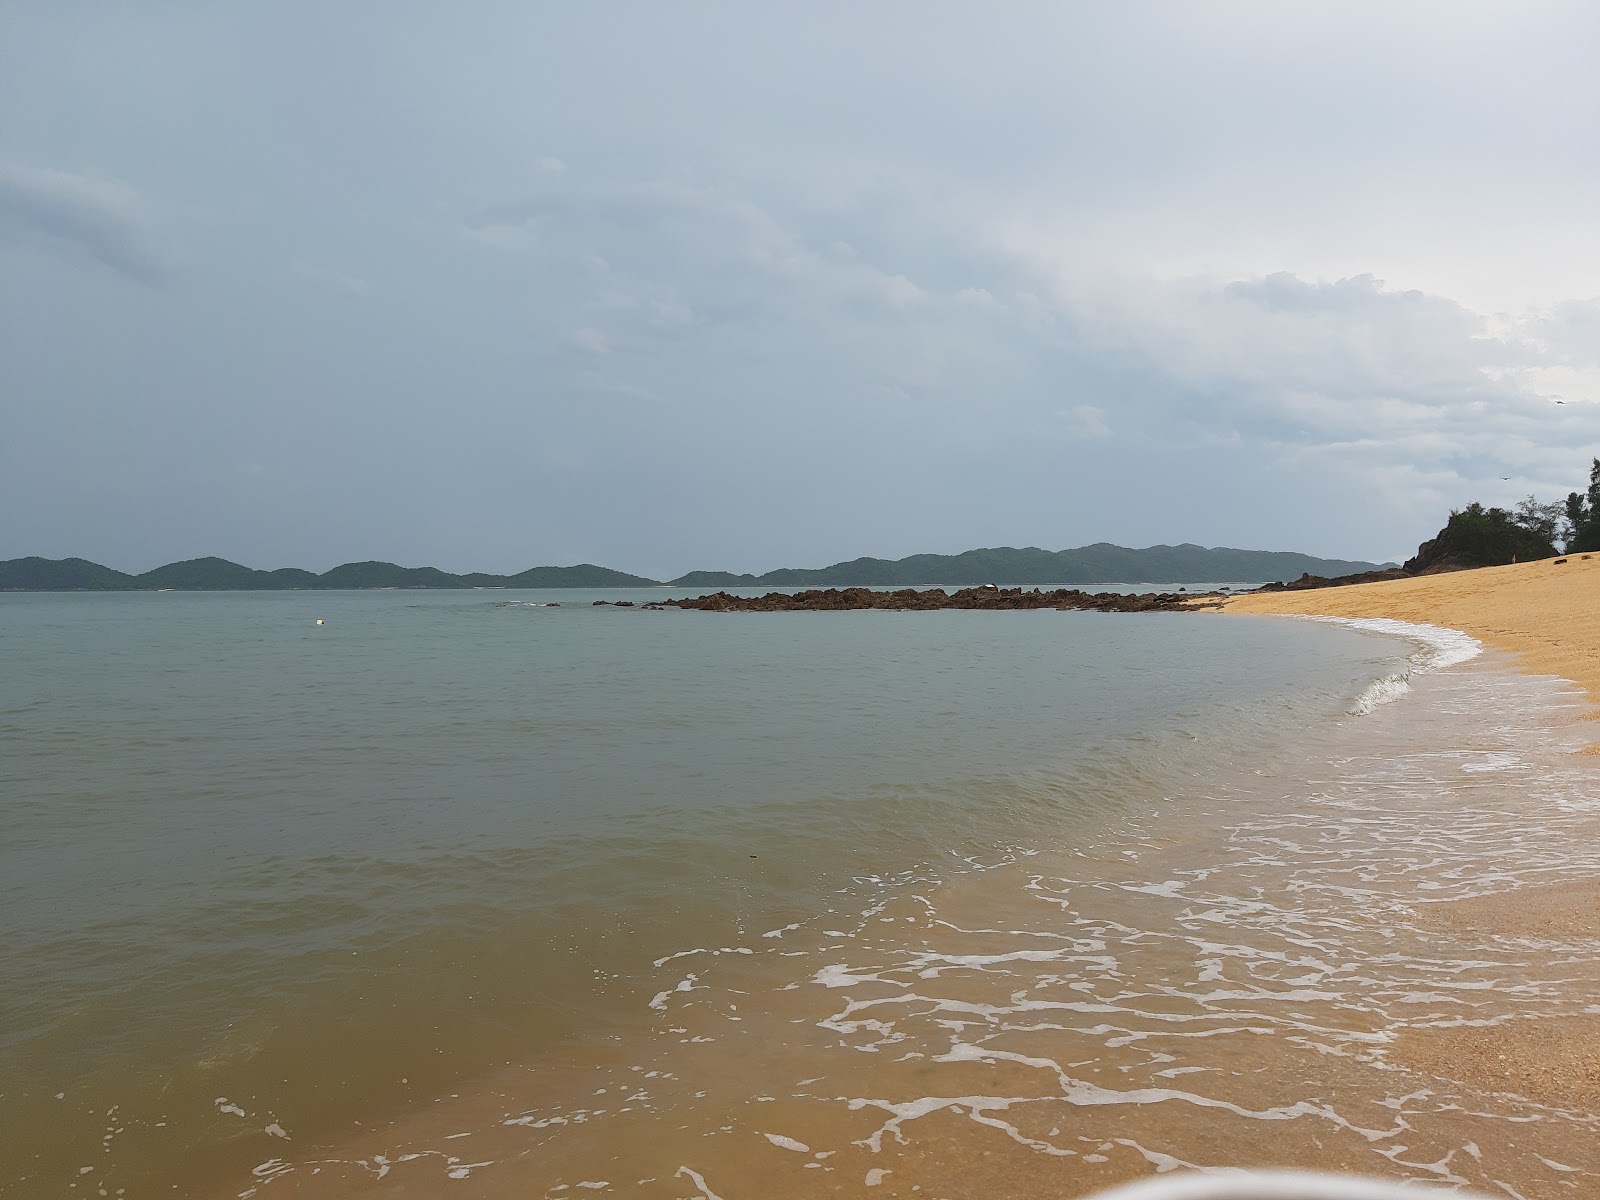 Cai Chien beach'in fotoğrafı - rahatlamayı sevenler arasında popüler bir yer